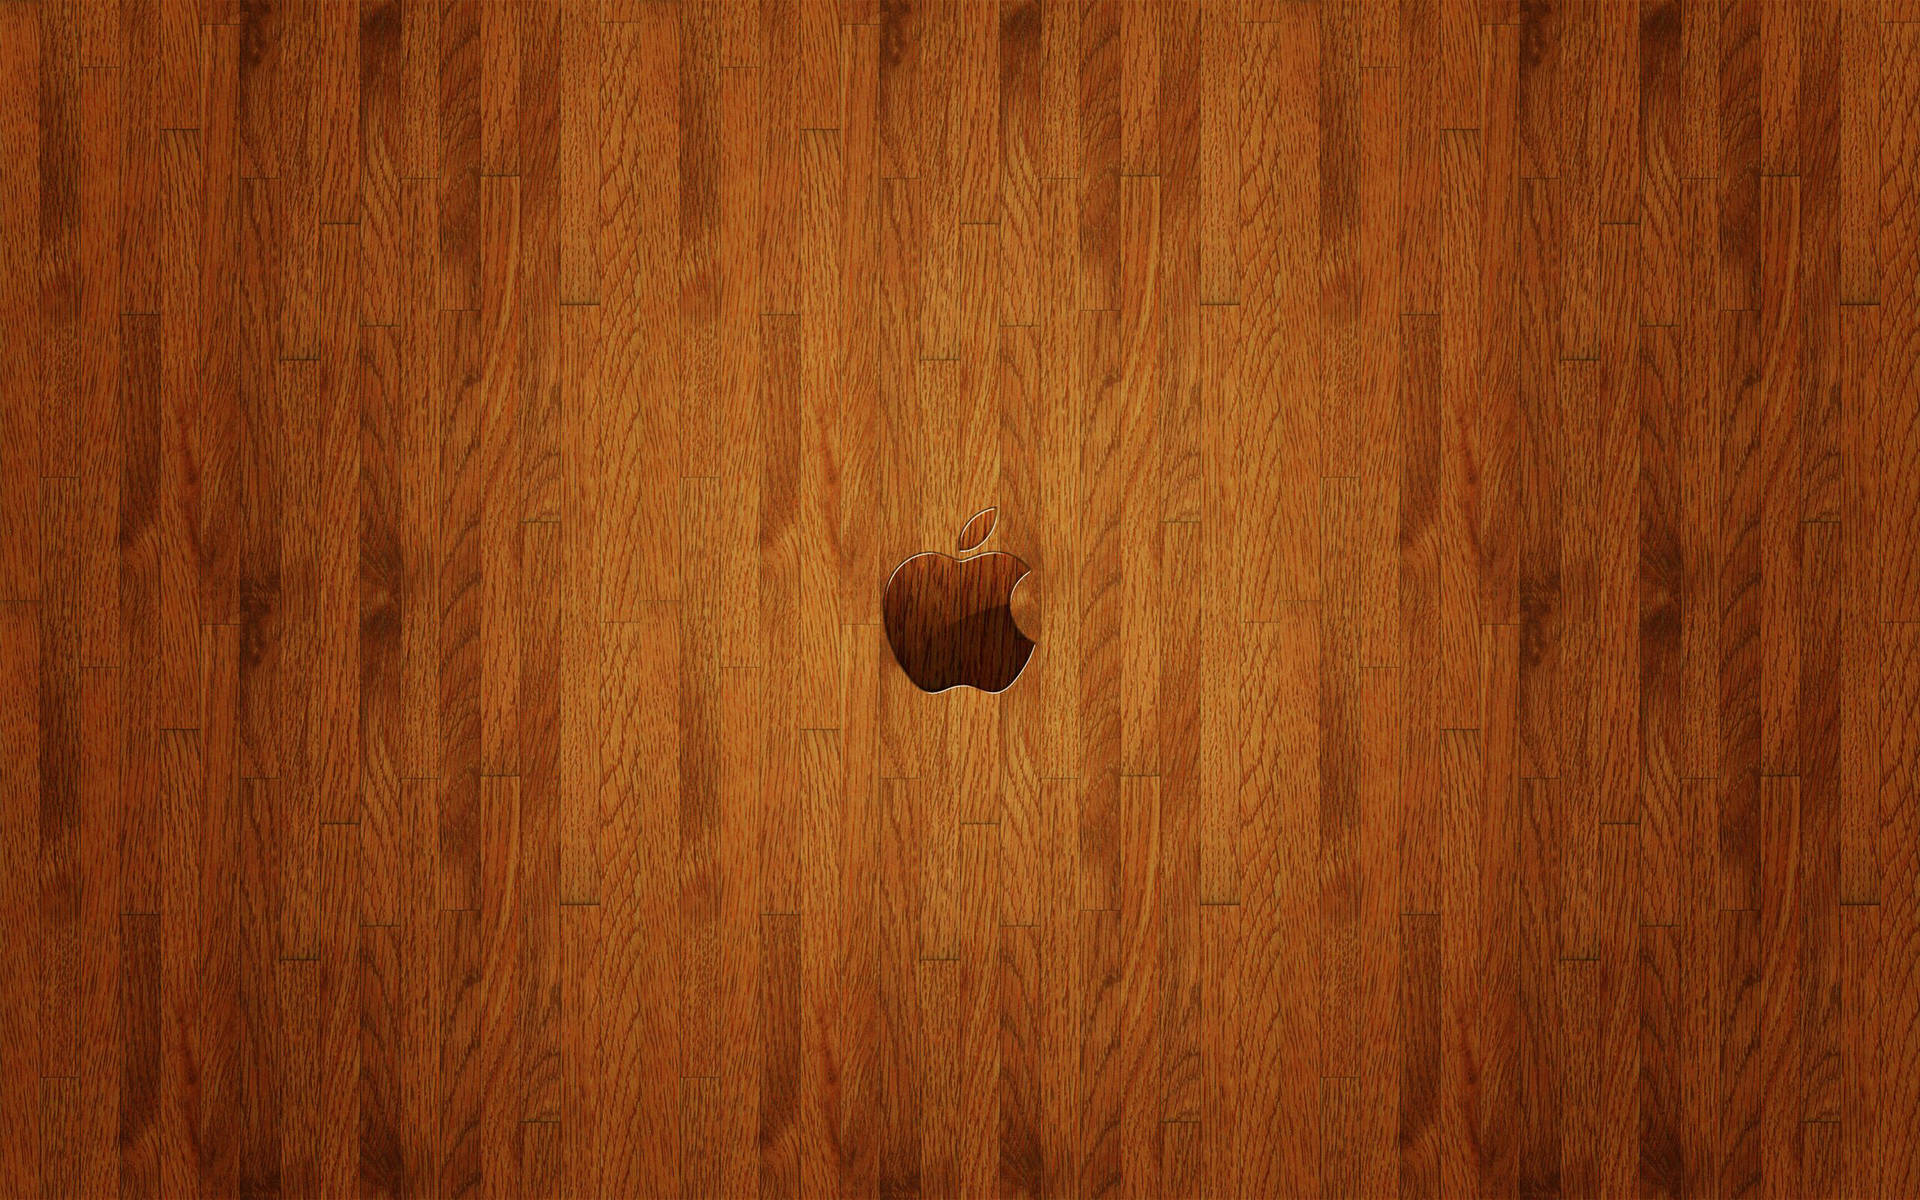 Apple 4k Ultra Hd Wooden Background